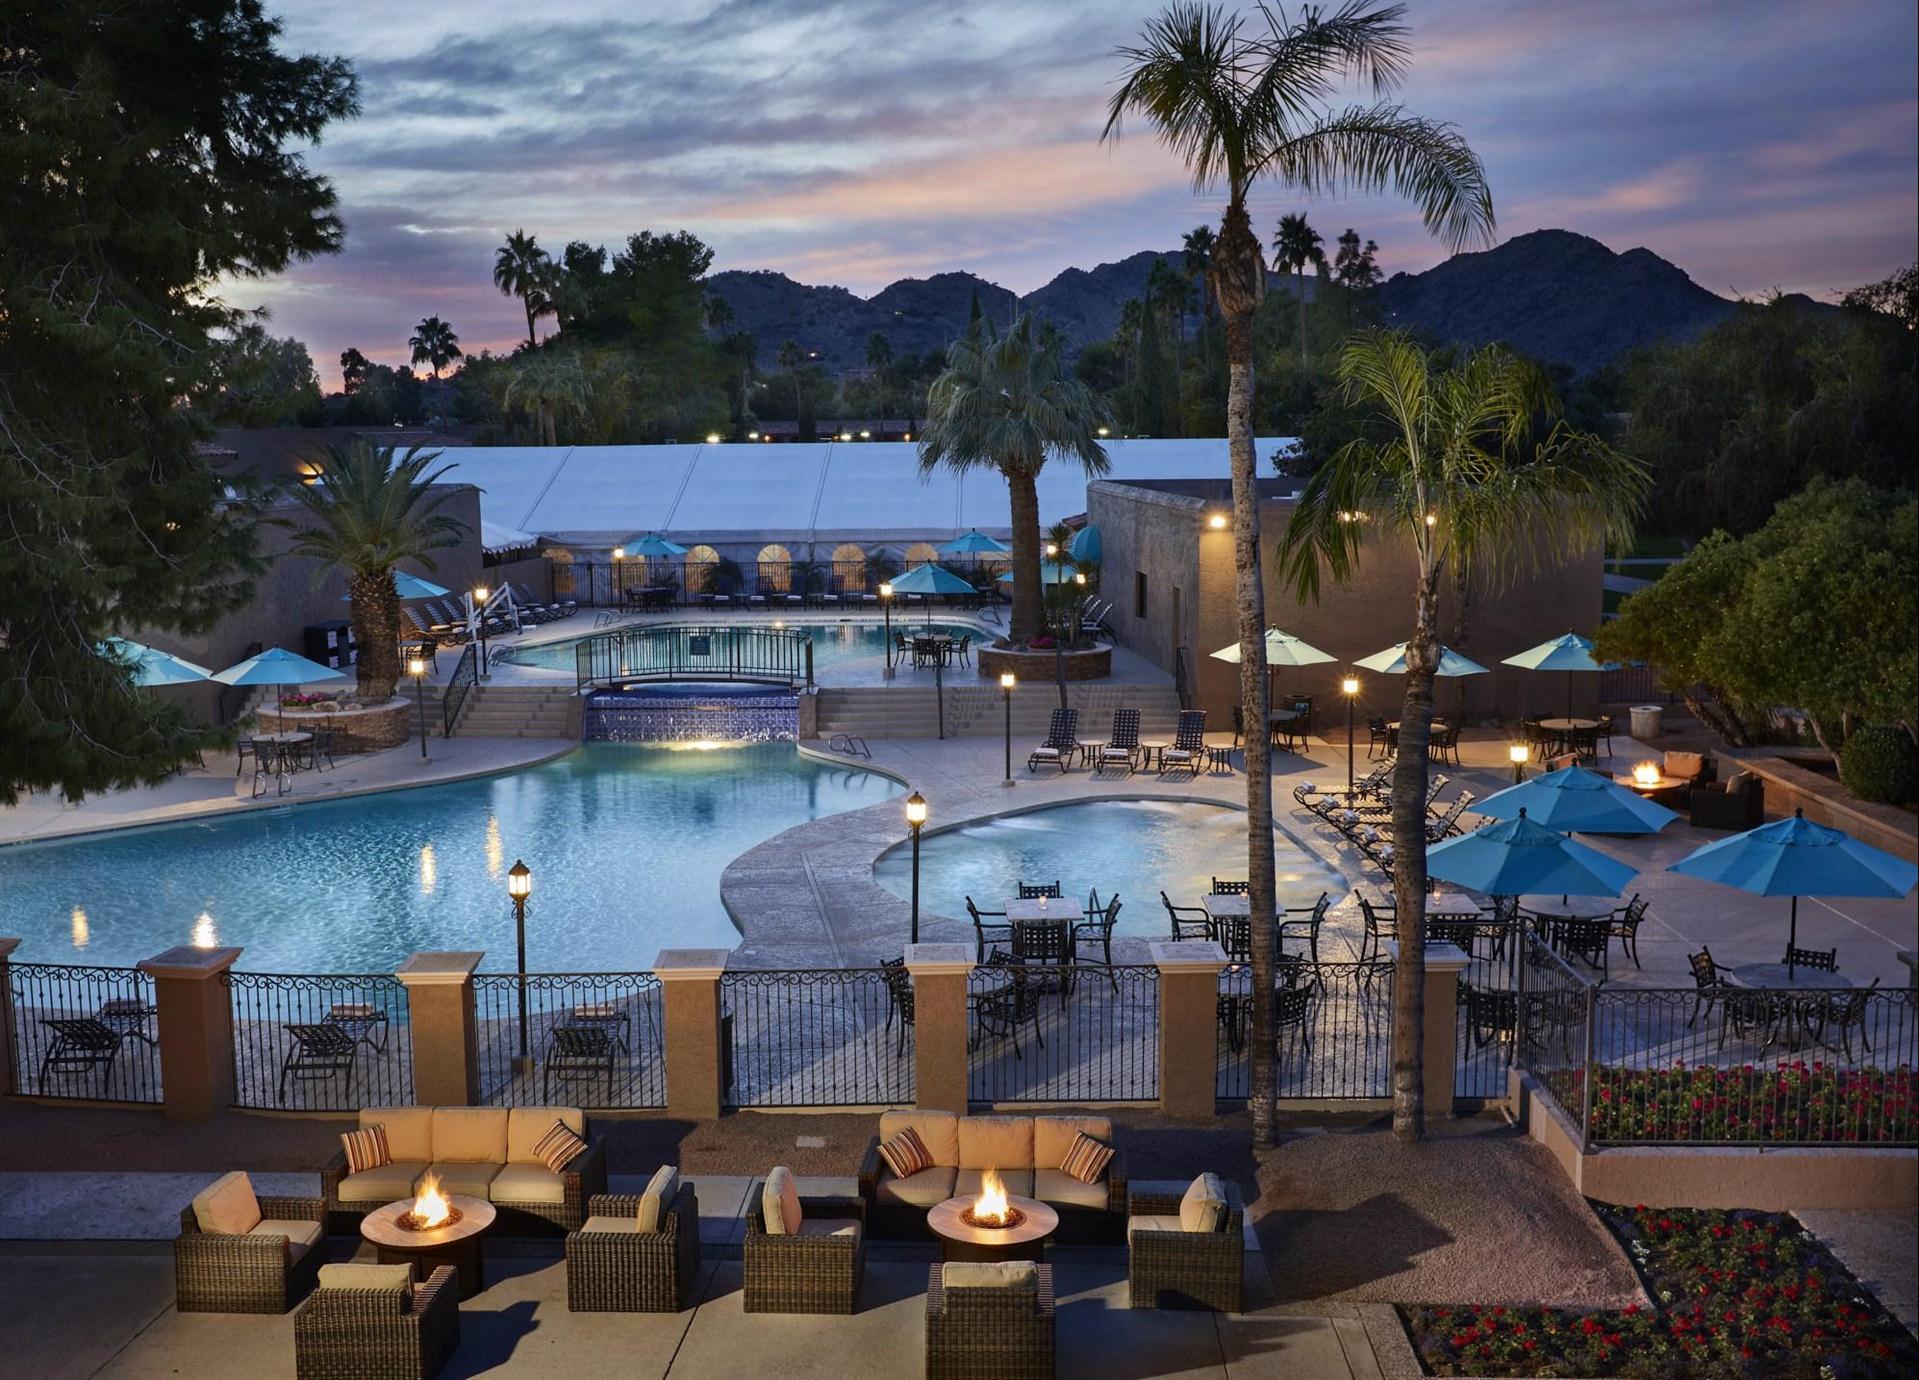 The Scottsdale Plaza Resort & Villas in Scottsdale, AZ